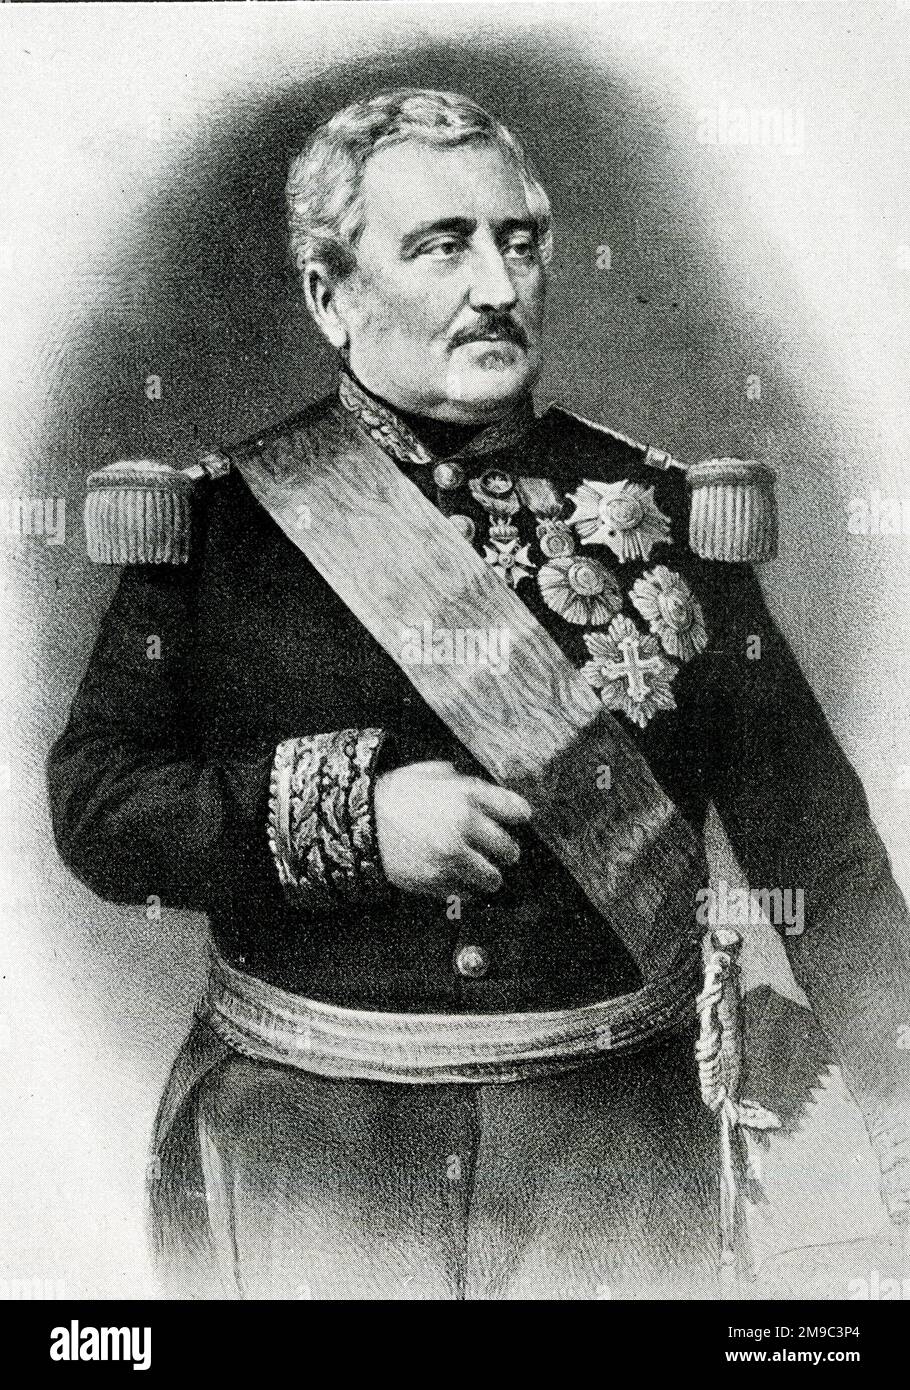 Jean-Baptiste Philibert Vaillant (1790-1872), französischer General und Politiker, Marschall von Frankreich. Stockfoto